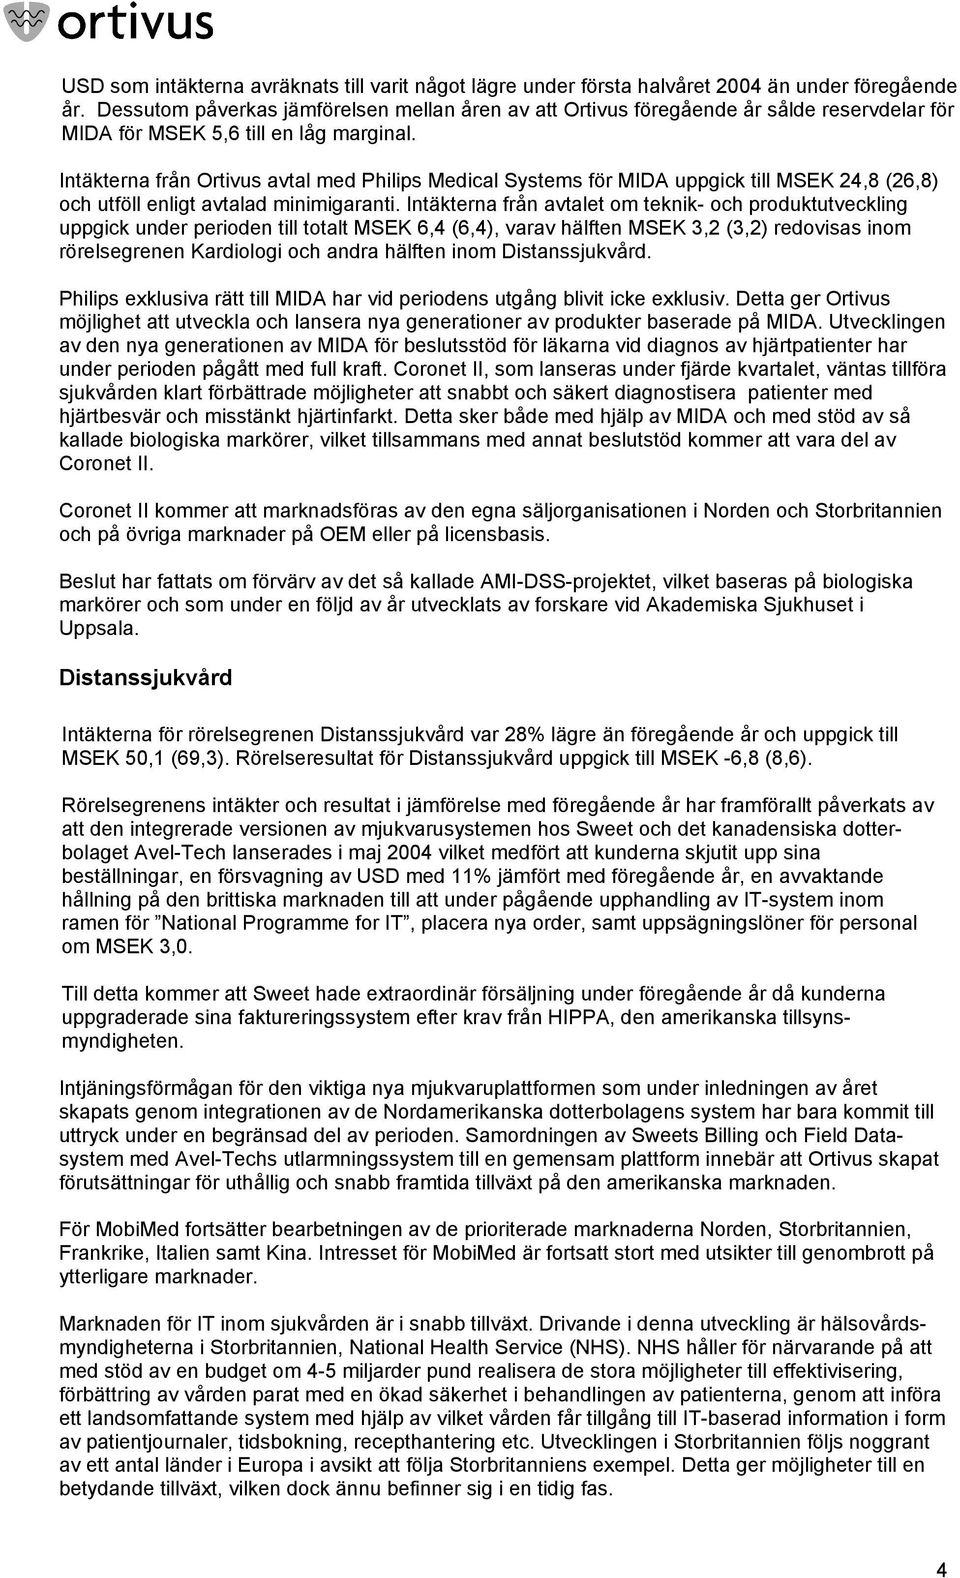 Intäkterna från Ortivus avtal med Philips Medical Systems för MIDA uppgick till MSEK 24,8 (26,8) och utföll enligt avtalad minimigaranti.